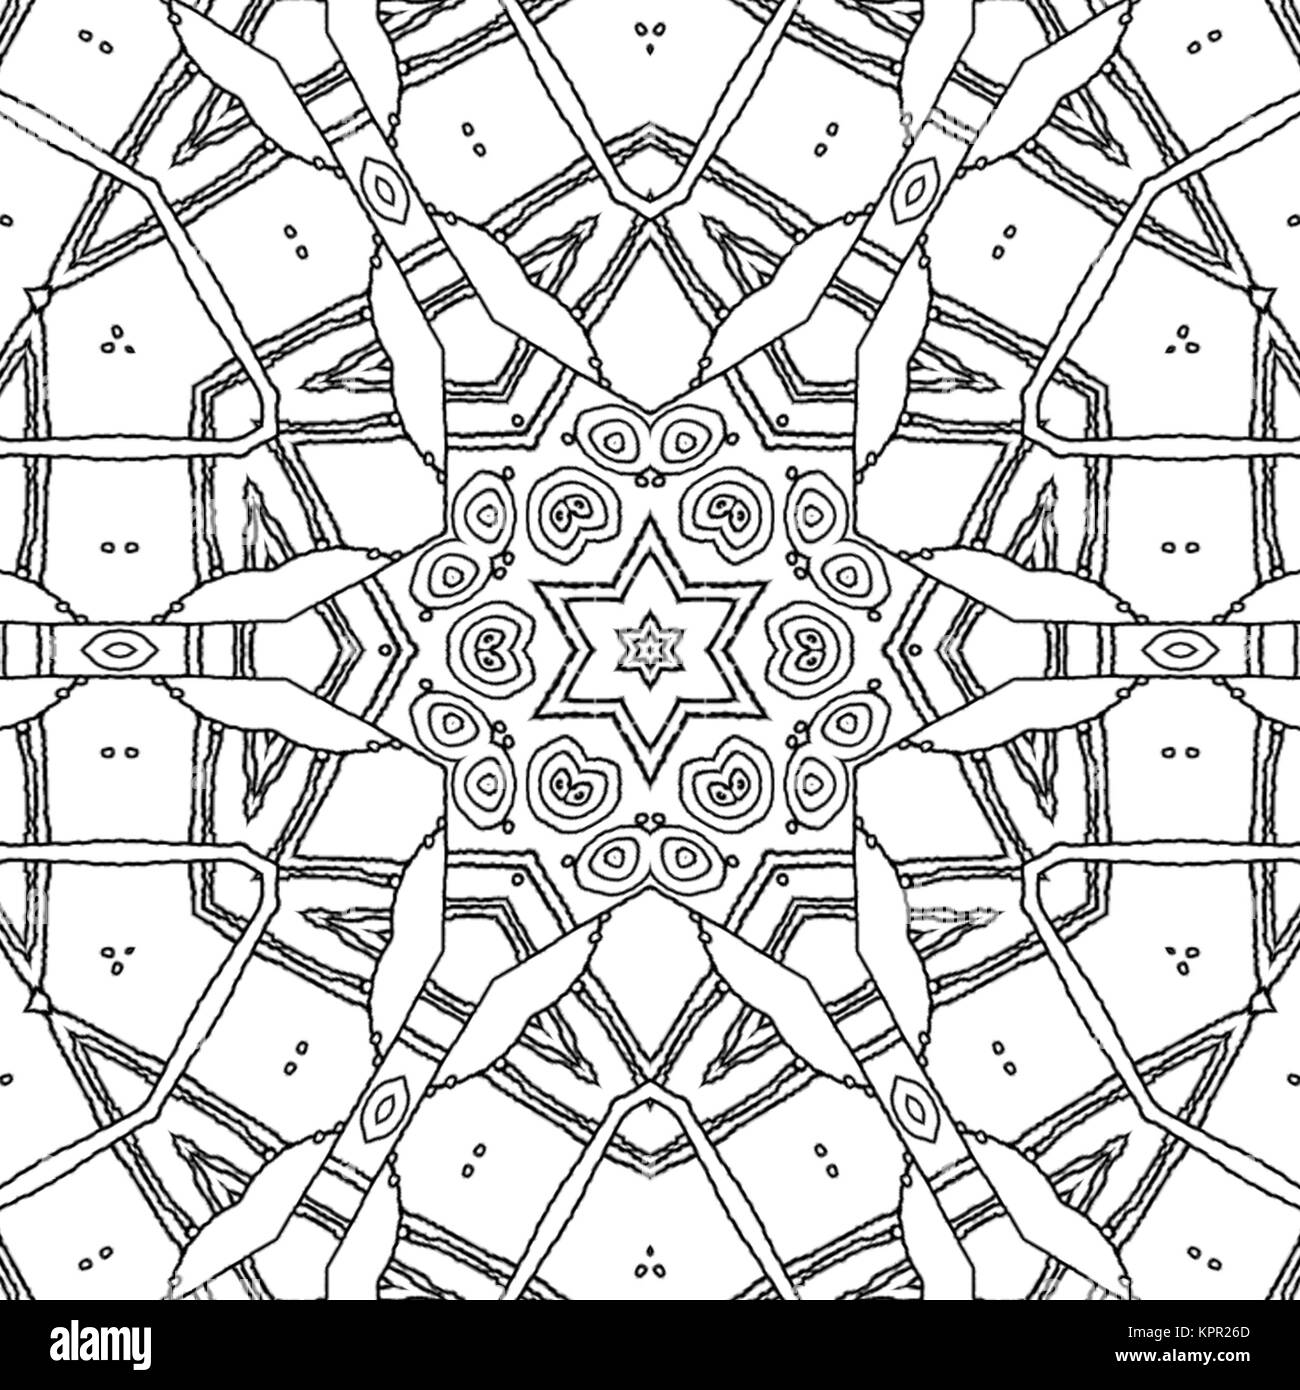 Zusammenfassung nahtlose Färbung Seite. Monochrome Mandala mit Stern und Sechskant Ornament, verzierte und verträumt Zeichnung. Stockfoto